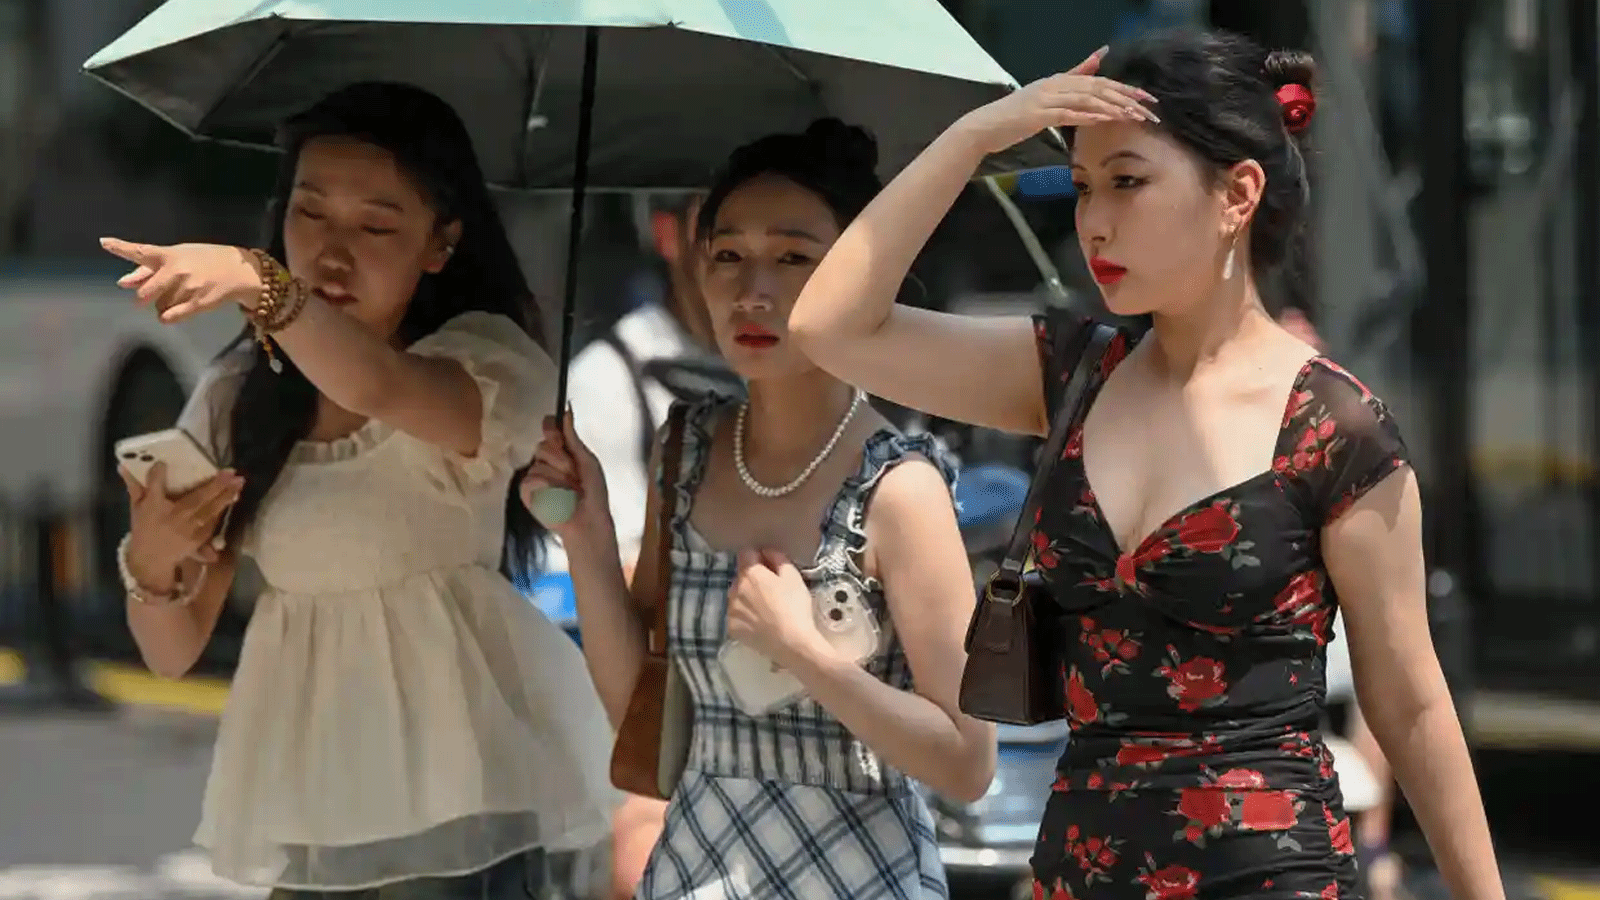 شنغهاي في الصين تُسجّل أعلى درجة حرارة على الإطلاق لشهر مايو يوم الاثنين 17 يوليو\تموز 2023